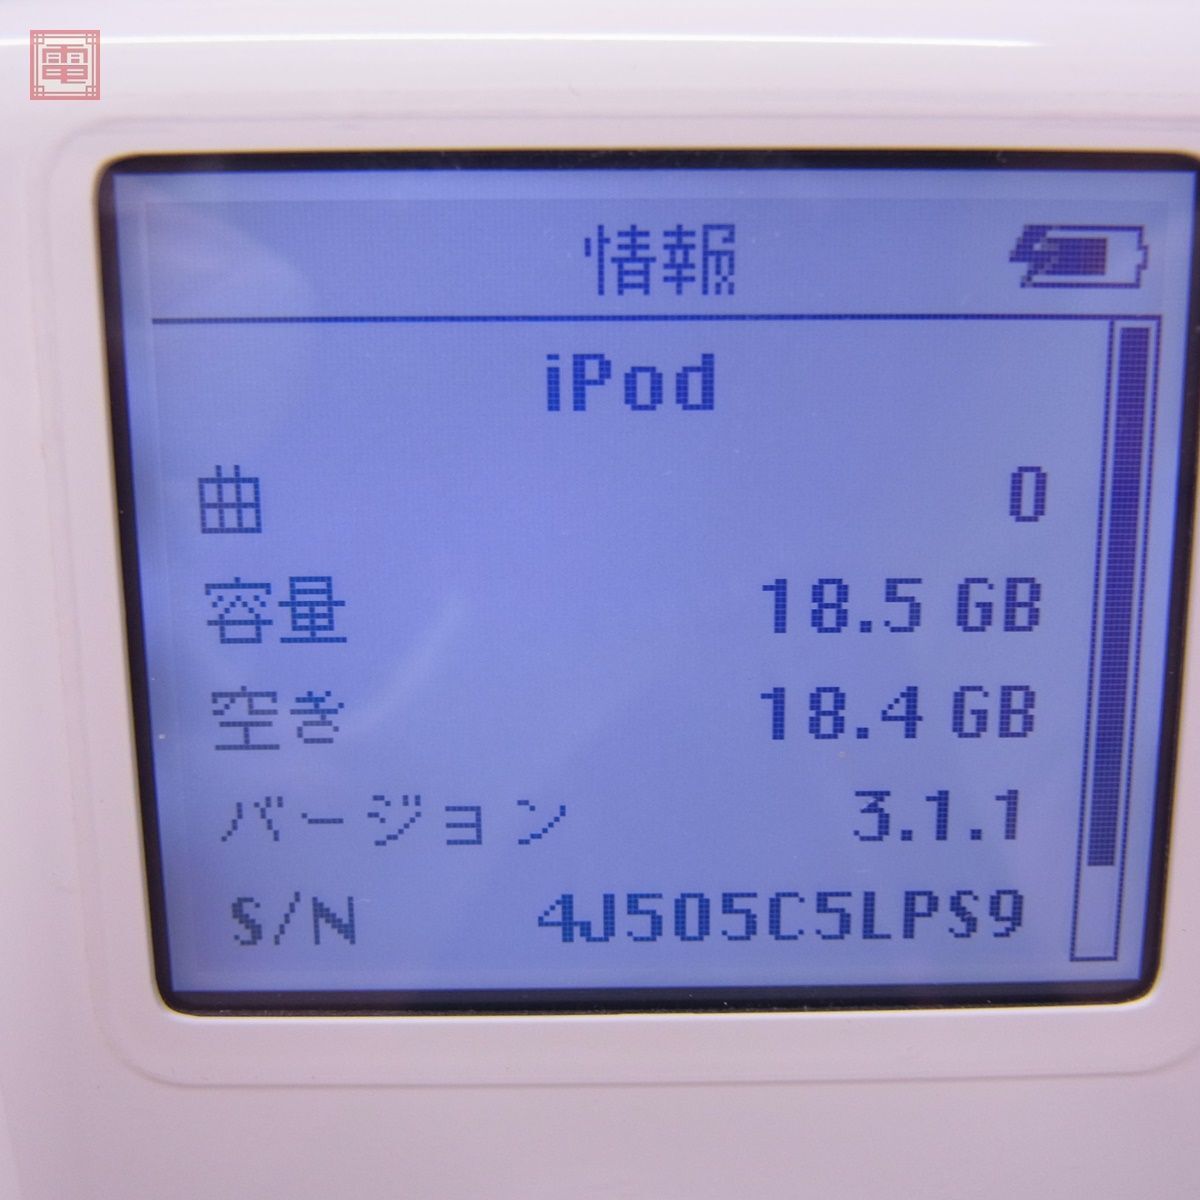 Apple iPod 20GB M9282J/A （A1059) + iPod Dock M9602G/A まとめてセット アップル アイポッド 箱説付 簡易動作確認済 【20_画像2